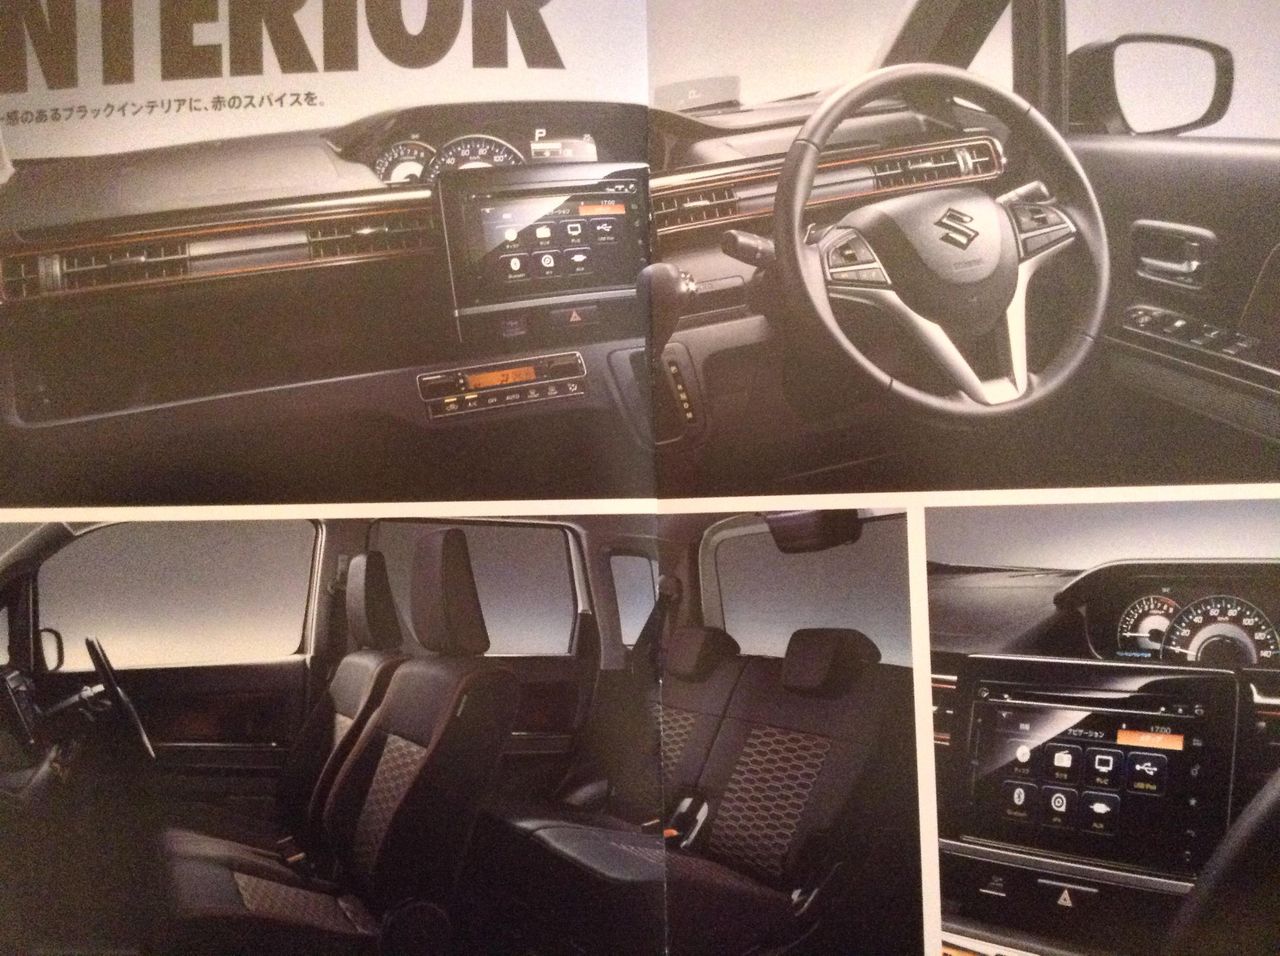 Next-gen-Suzuki-Wagon-R-Stingray-interior-brochure-leaked